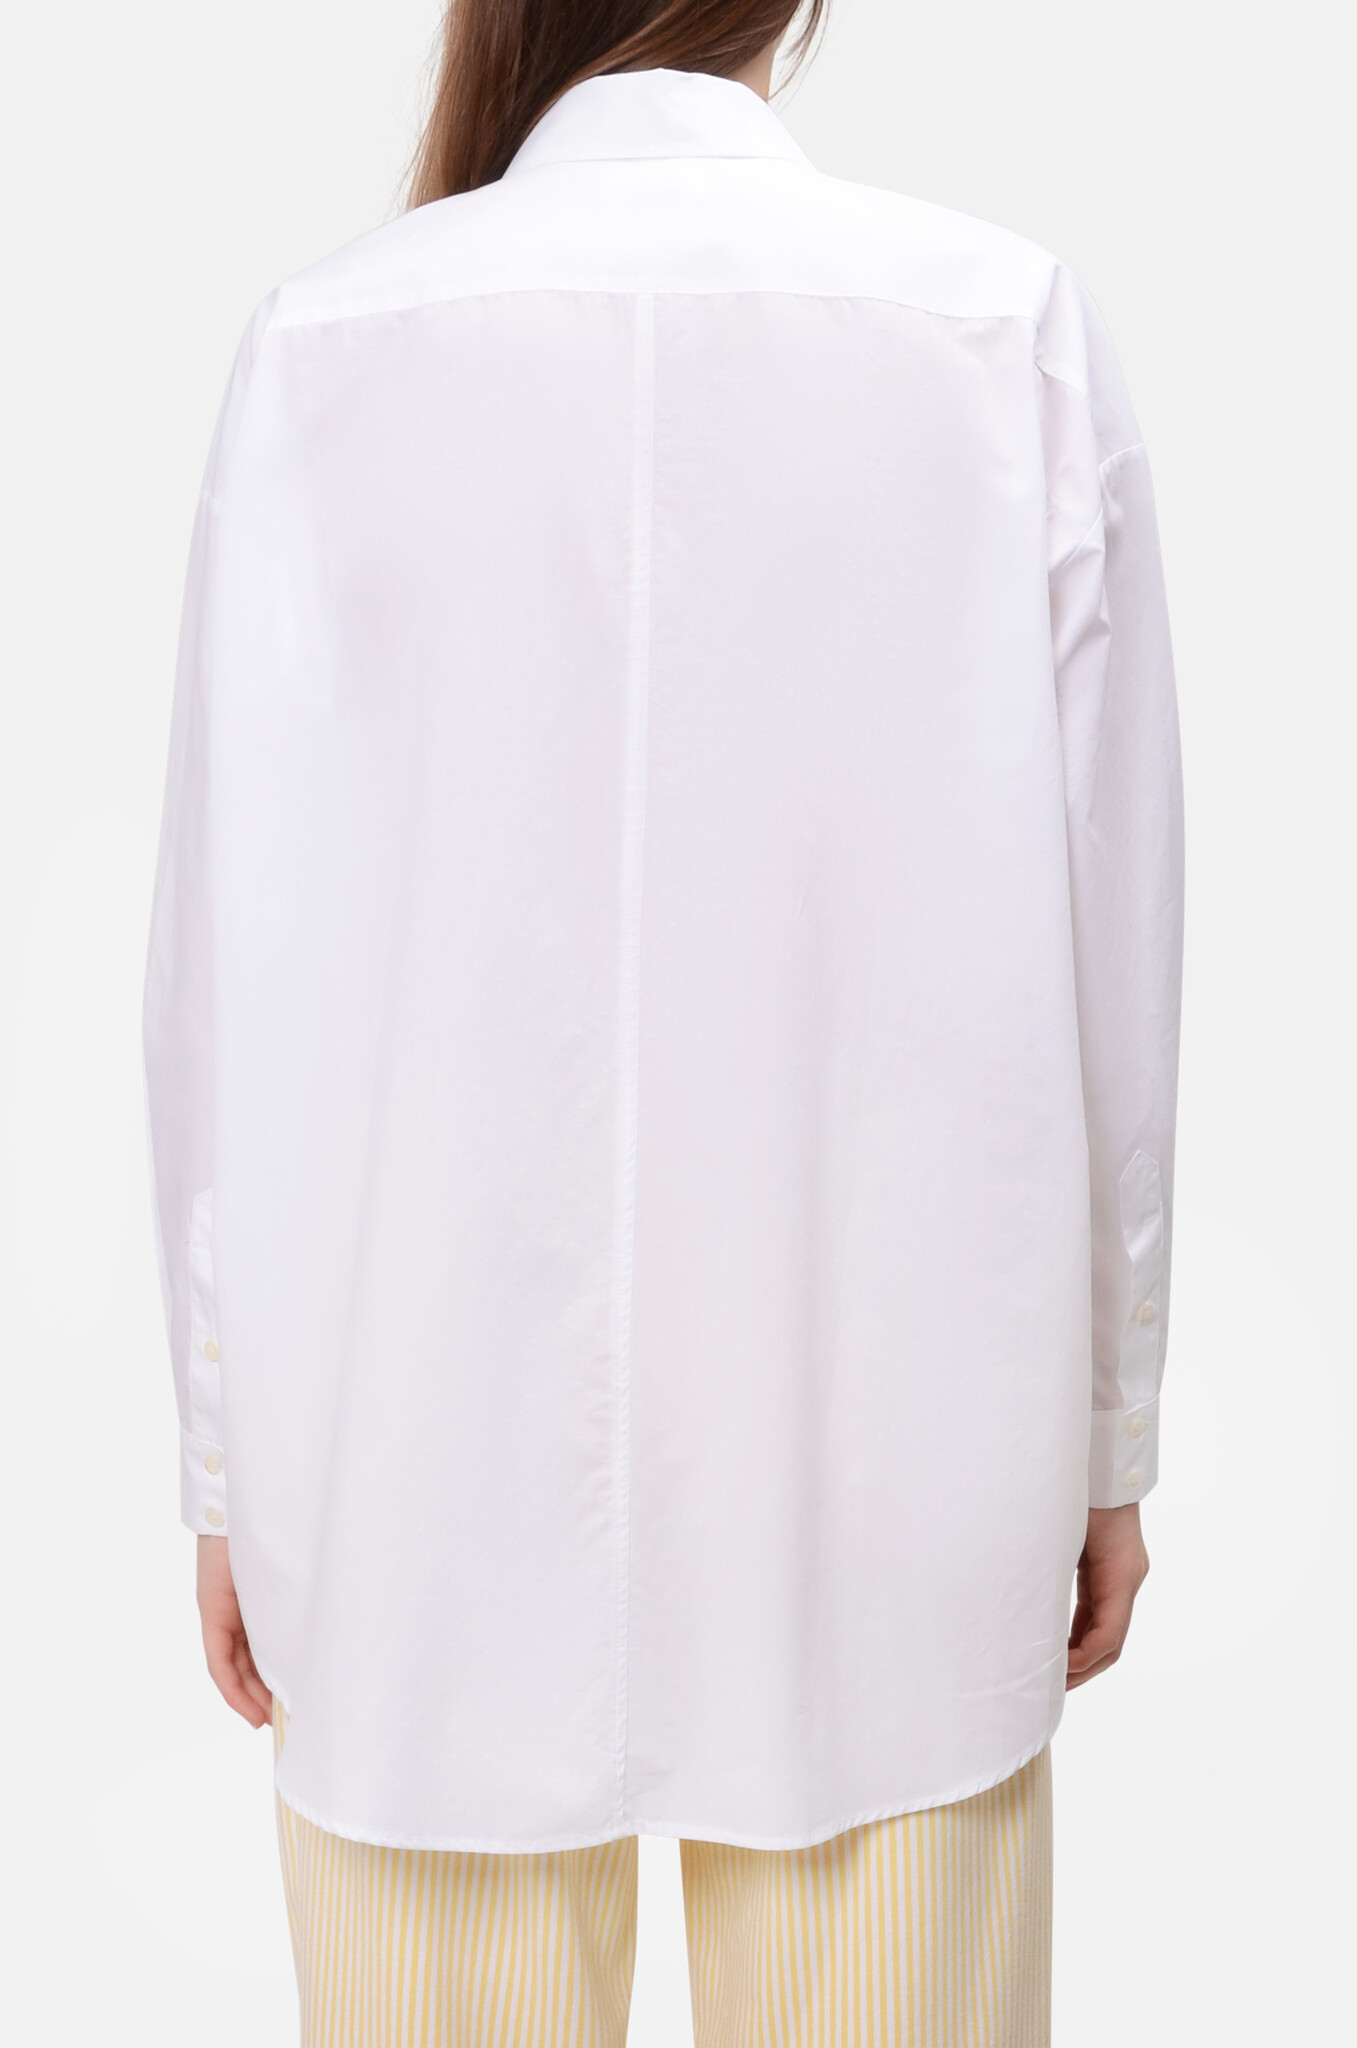 Oversized Shirt in White Poplin-3